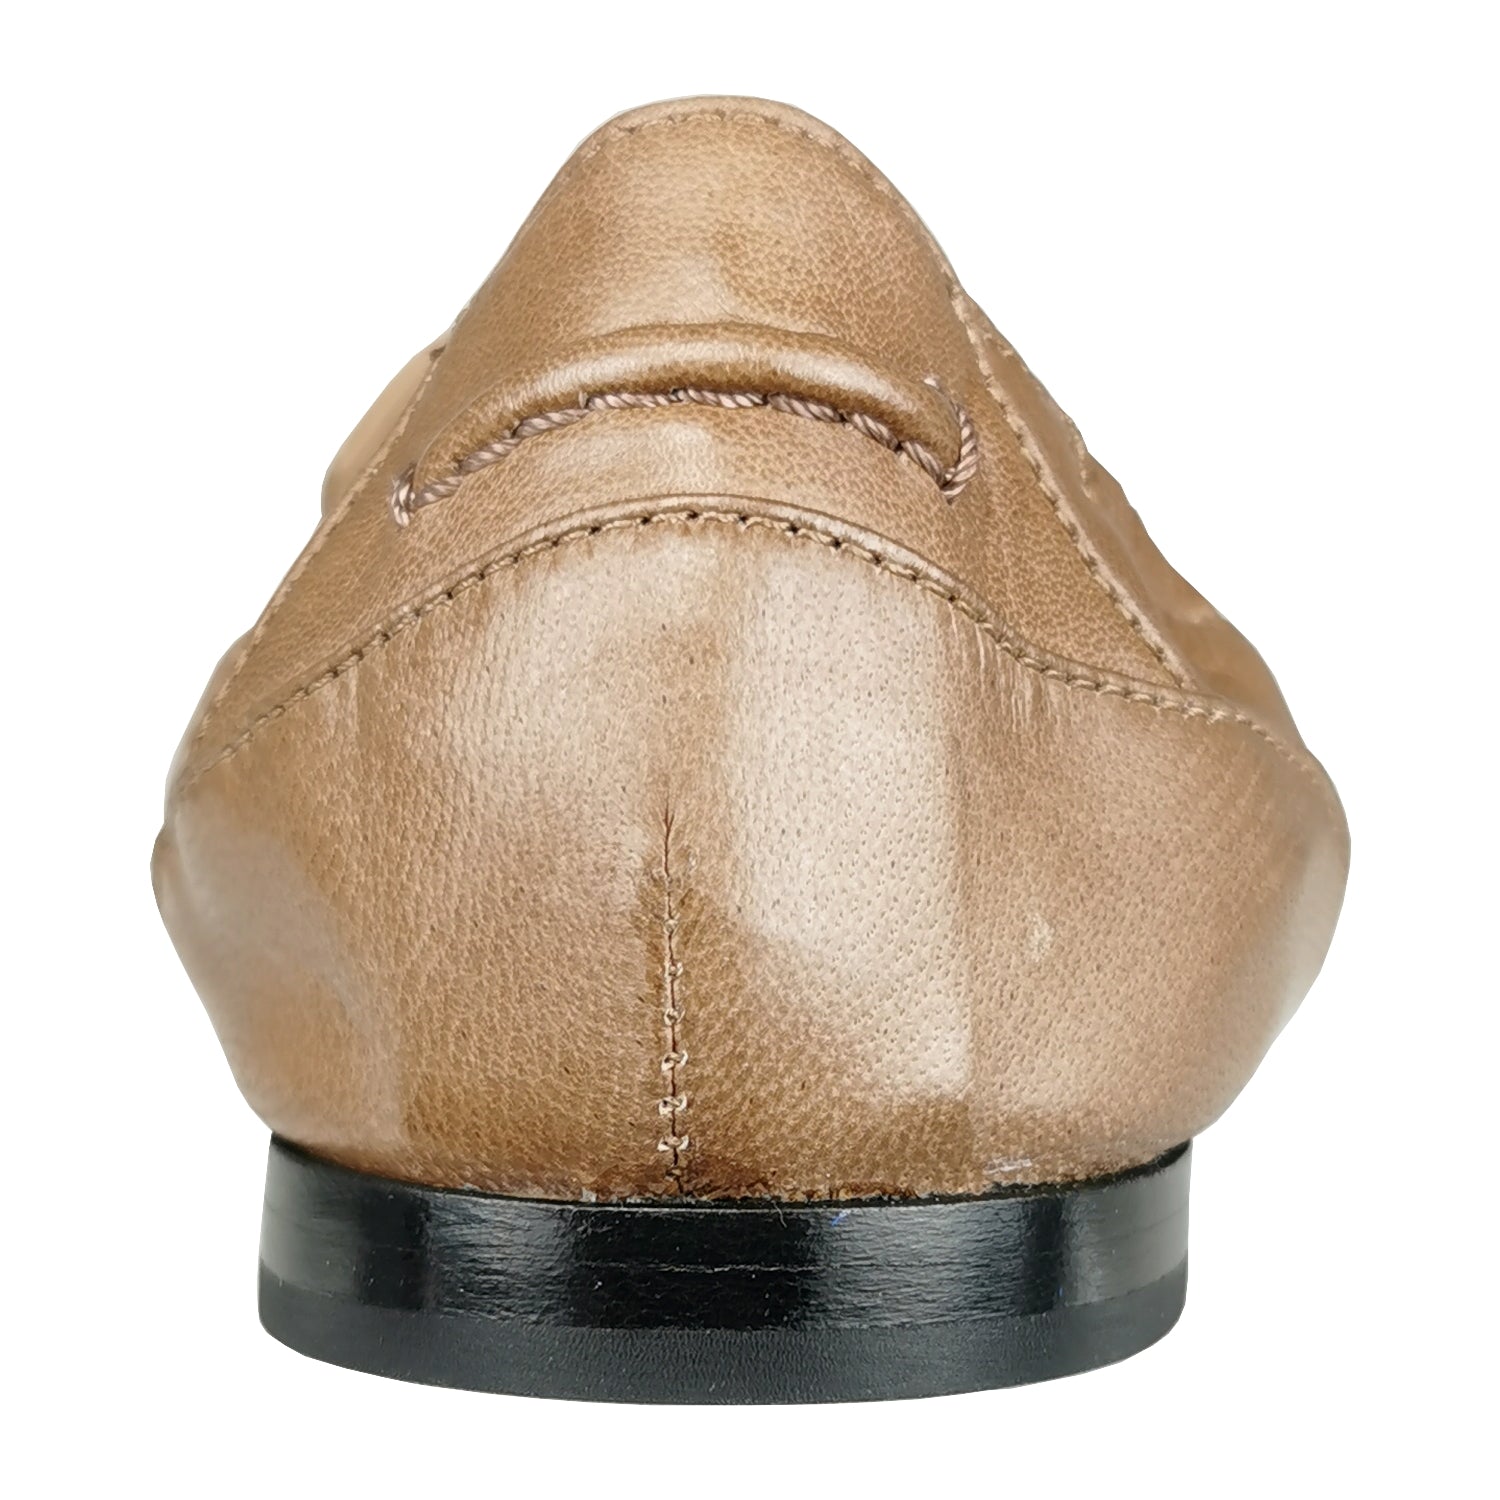 Pomme Dór Schuhe online kaufen Mokassins Ingrid mit Lederlaschen iin edlen Toffeefarbton mit spitzem Leisten aus der neuen Kollektion von Pomme D´or